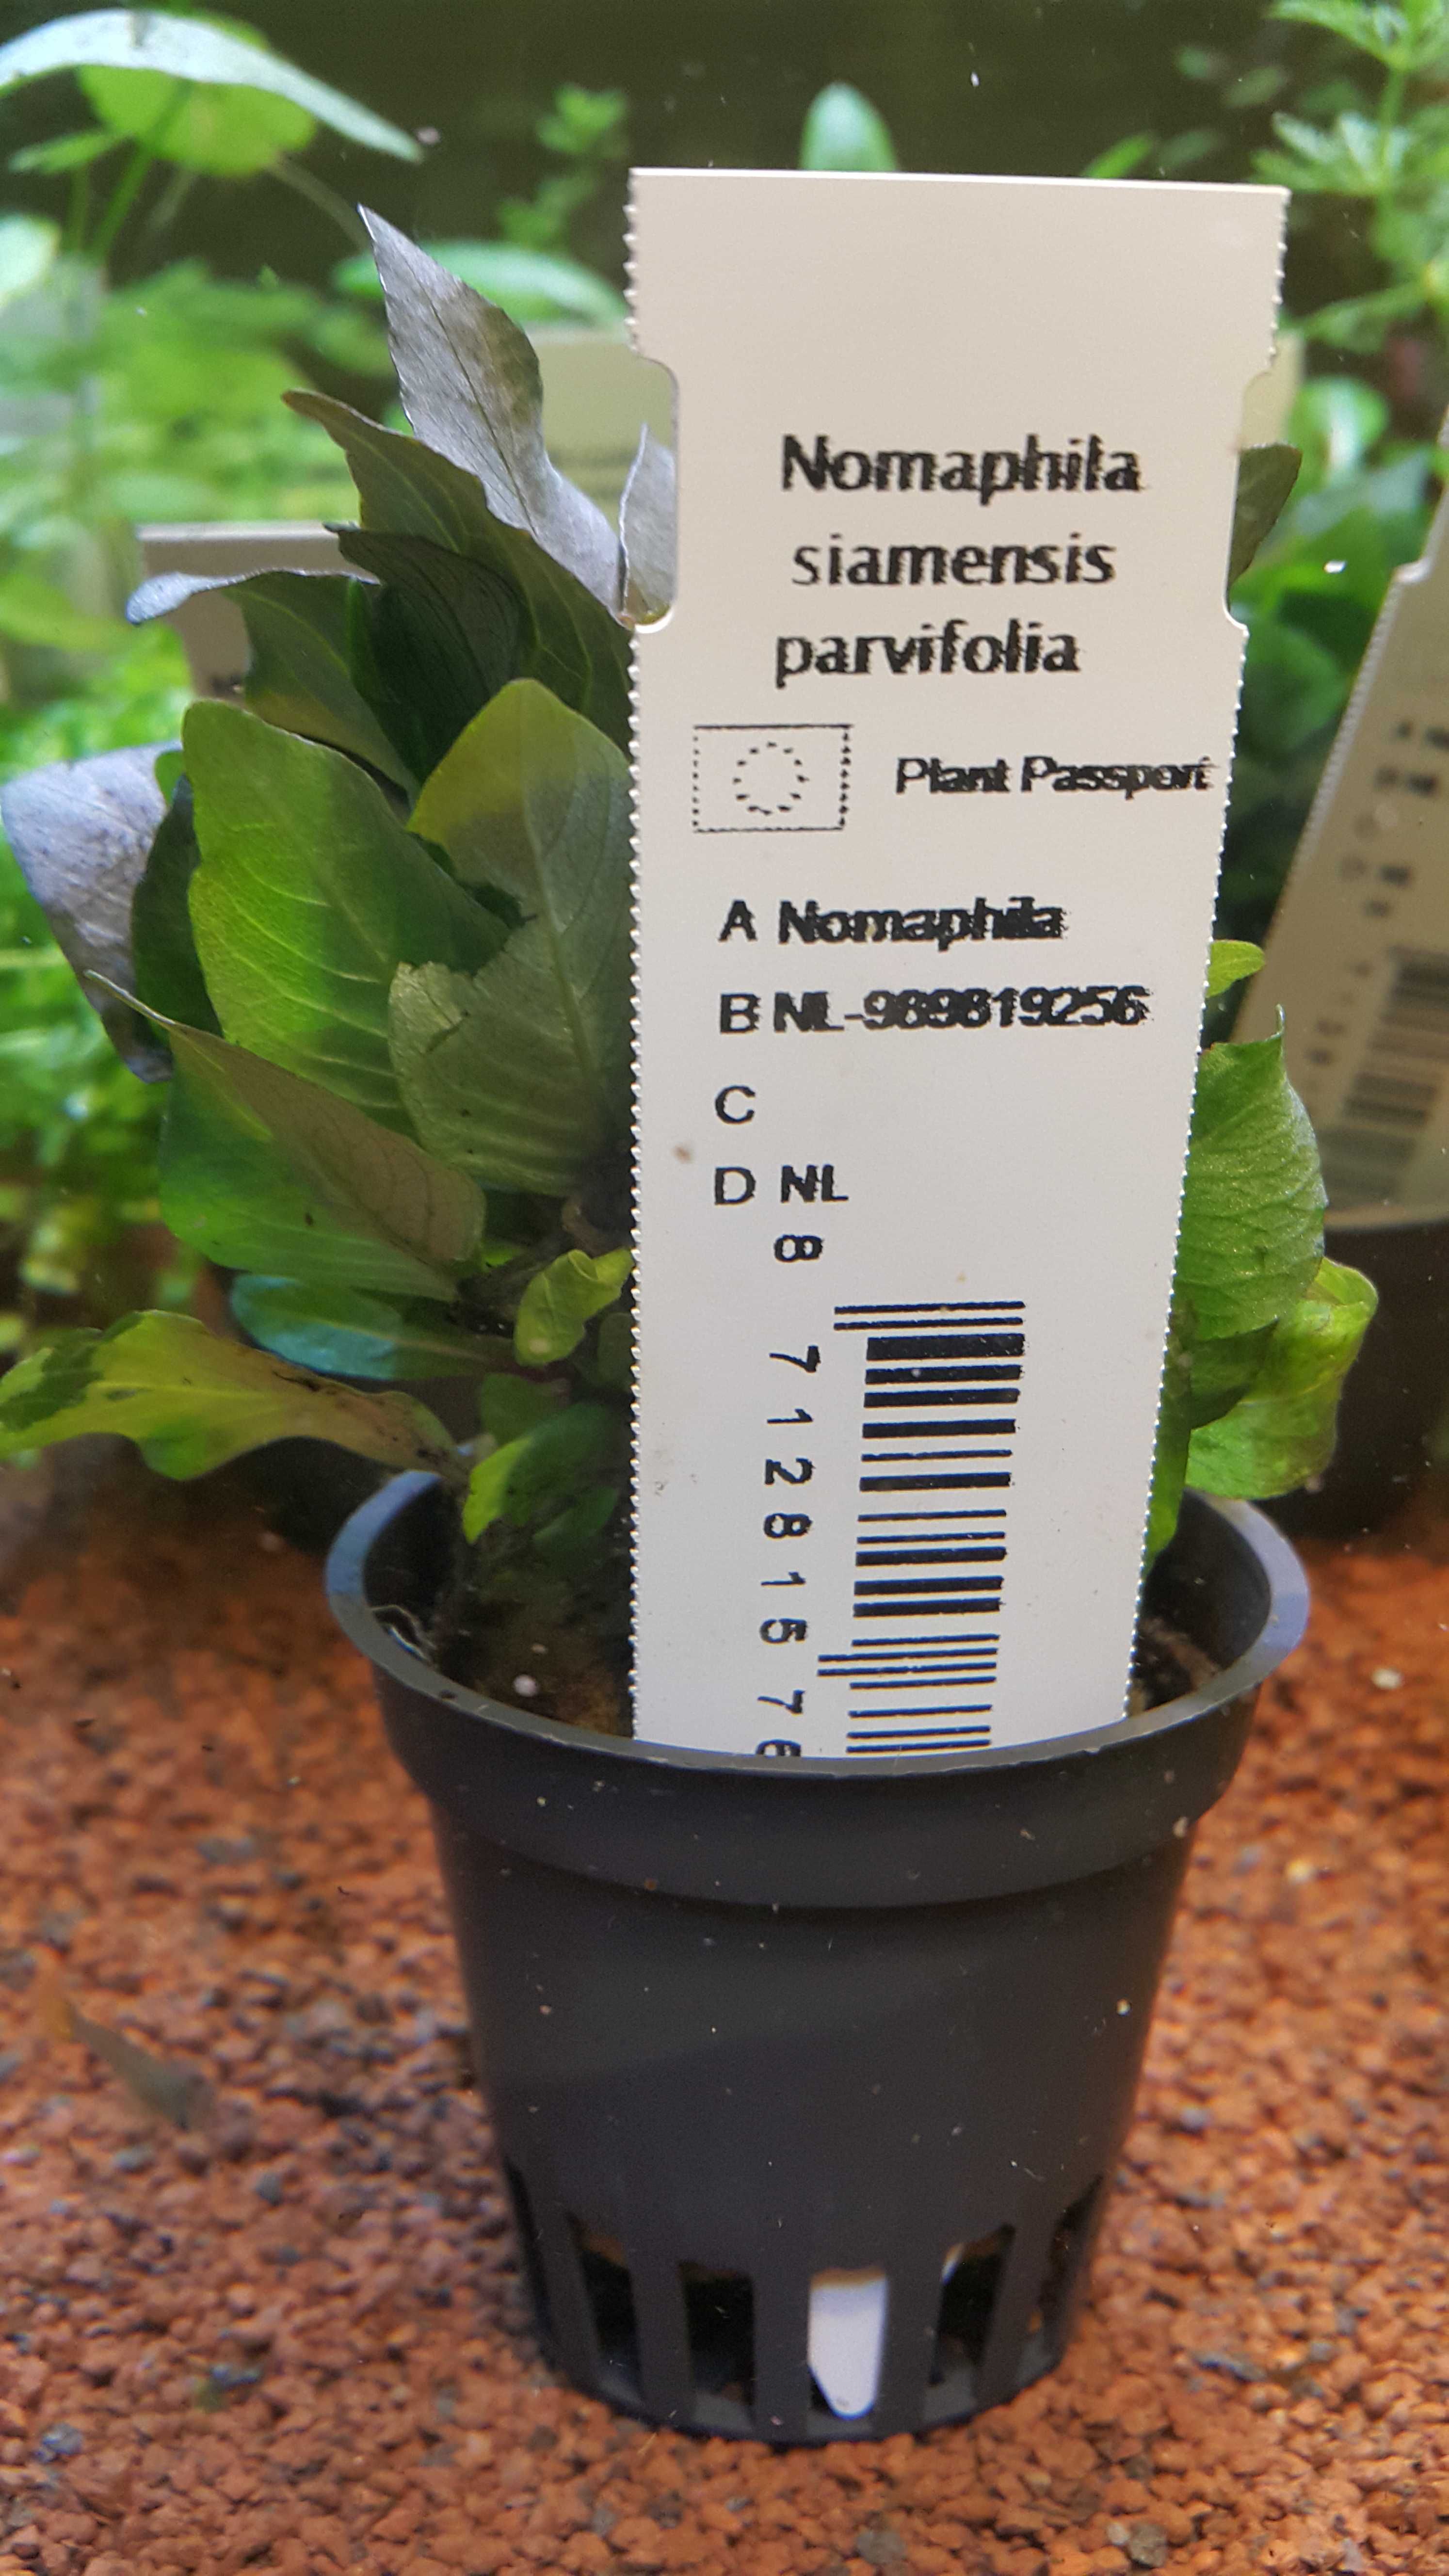 Nomaphila Siamensis Parvifolia/Rośliny akwariowe w koszyczkach